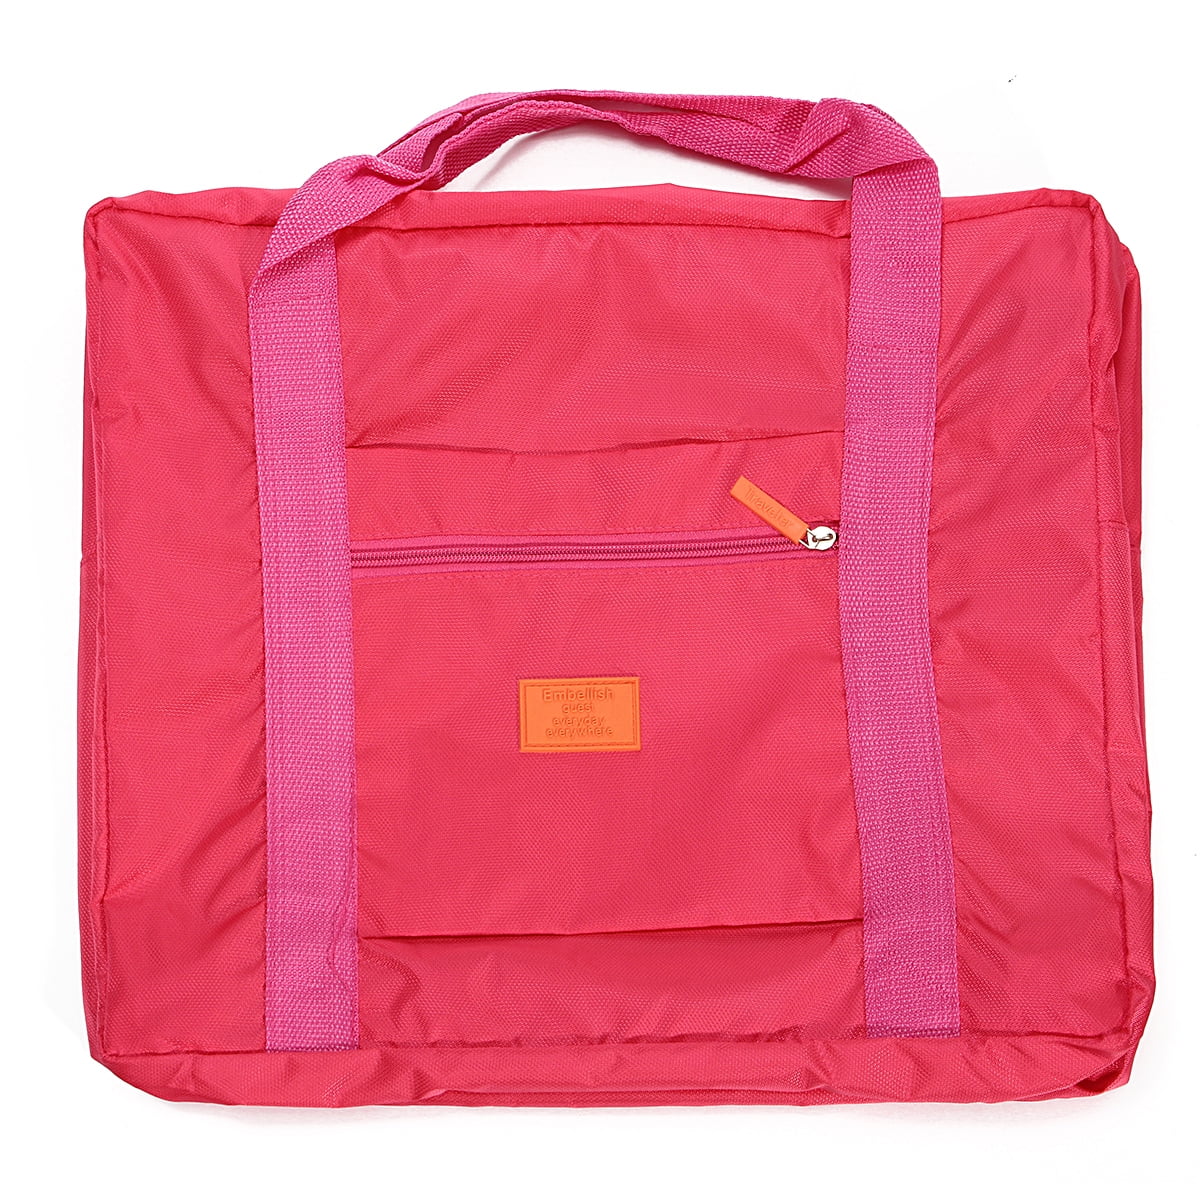 Large Travel Foldable Luggage Bag Clothes Storage Organizer Carry On Nylon Bag 